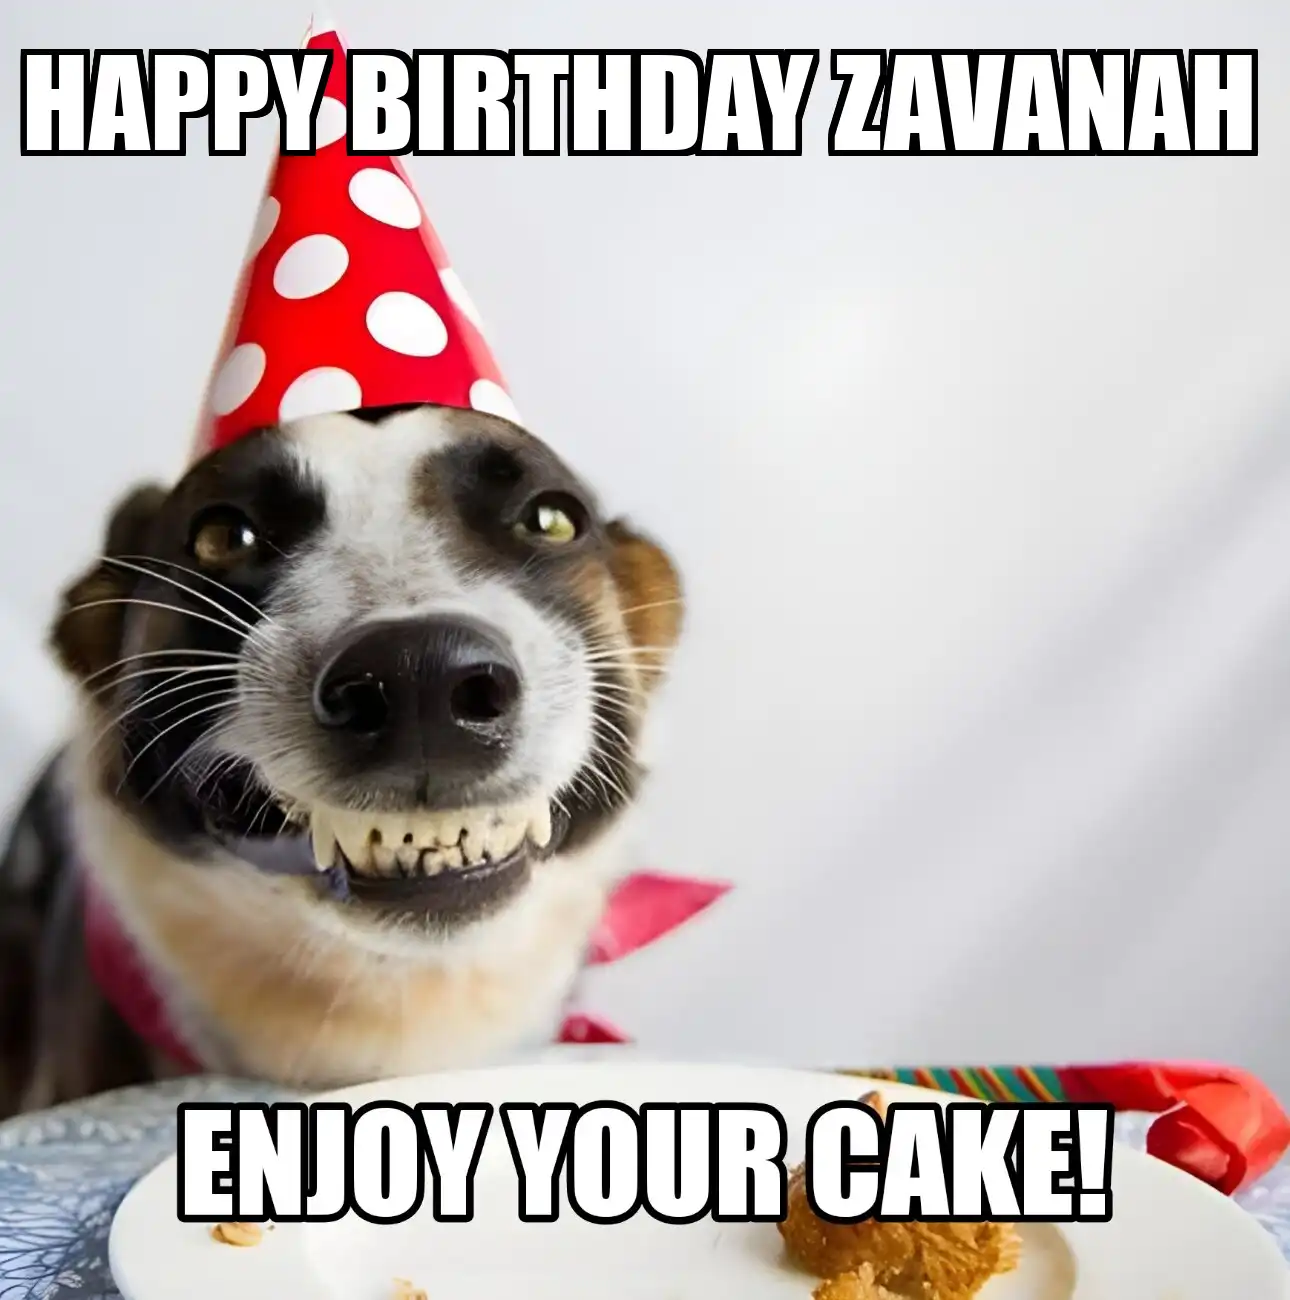 Happy Birthday Zavanah Enjoy Your Cake Dog Meme